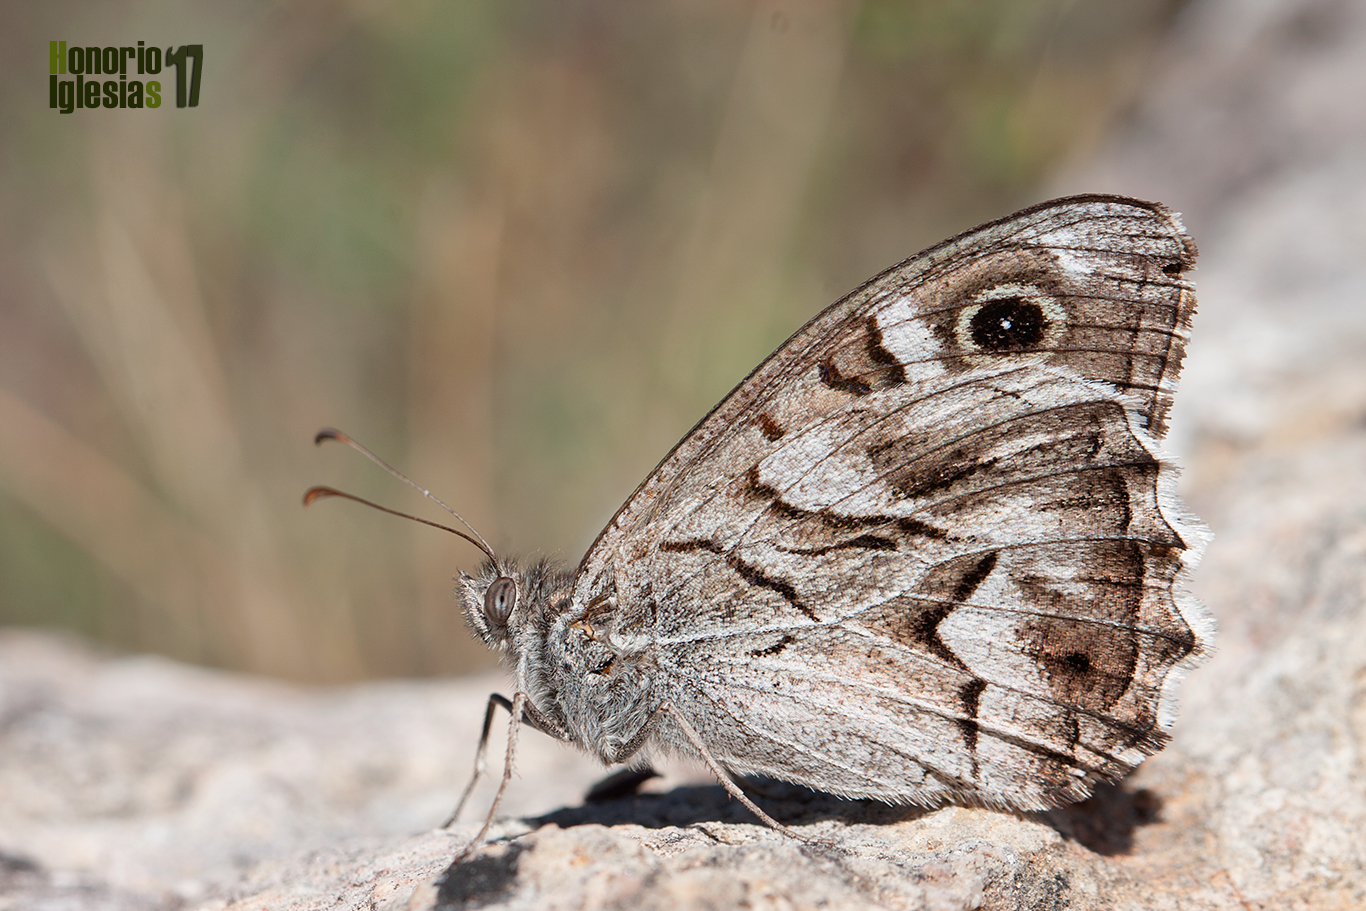 Ejemplar de mariposa sátiro rayado o festón blanco) (Hipparchia (=Pseudotergumia) fidia) con el borde del ocelo del ala anterior muy desgastado.